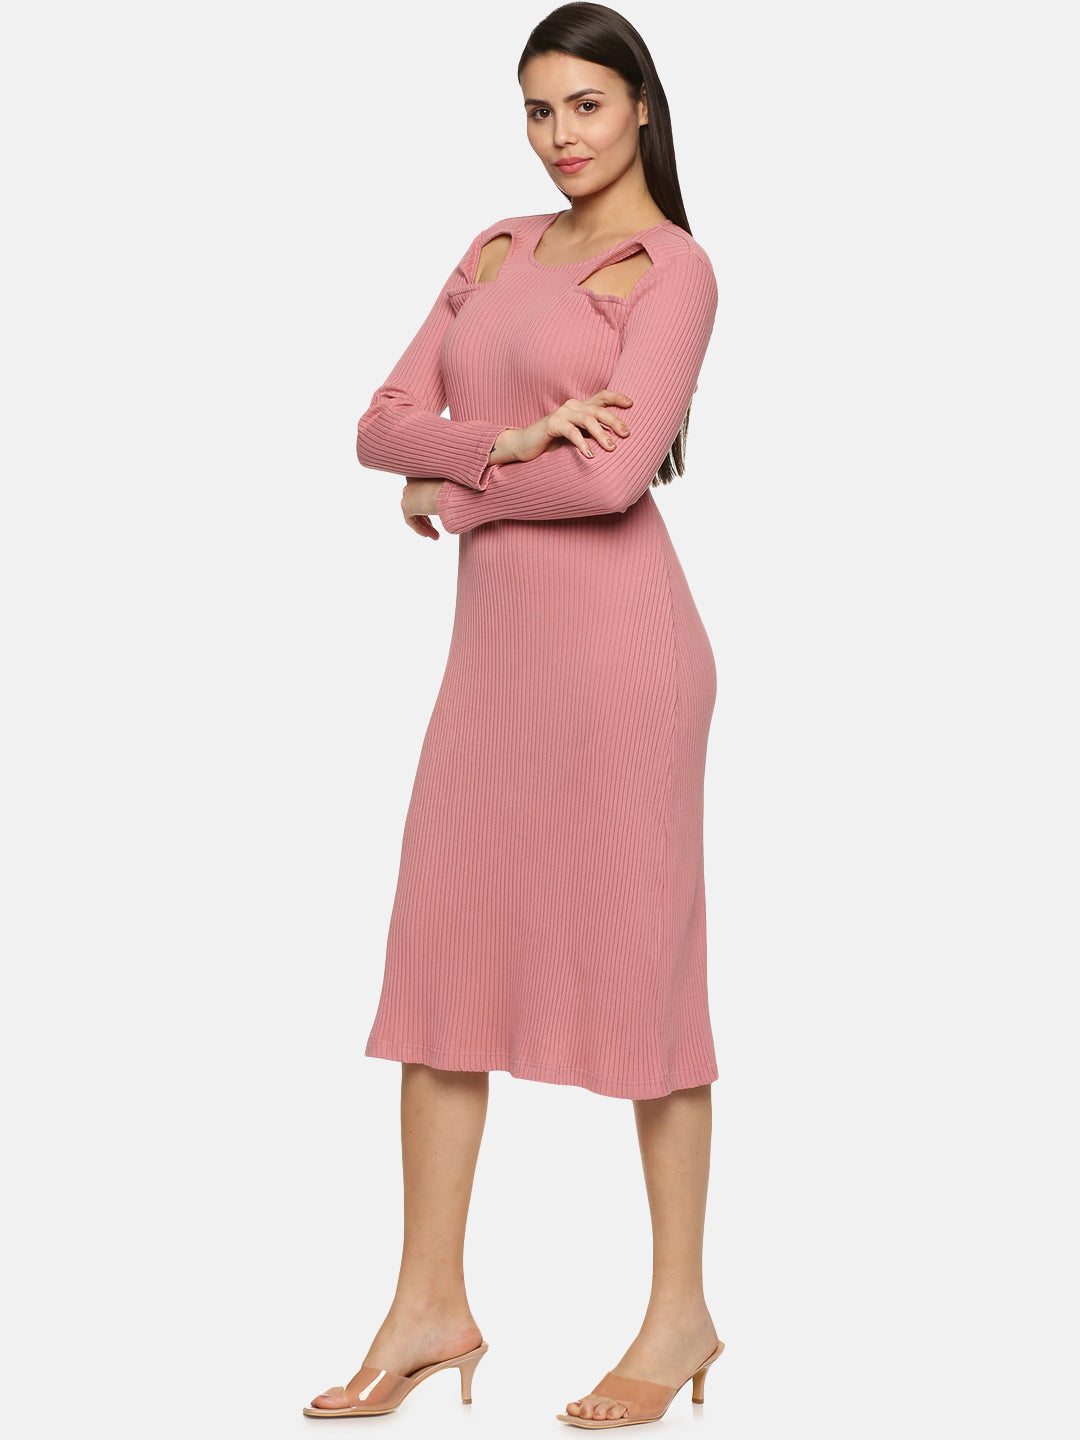 Modern Mauve Cutout Midaxi Knit Dress For Women